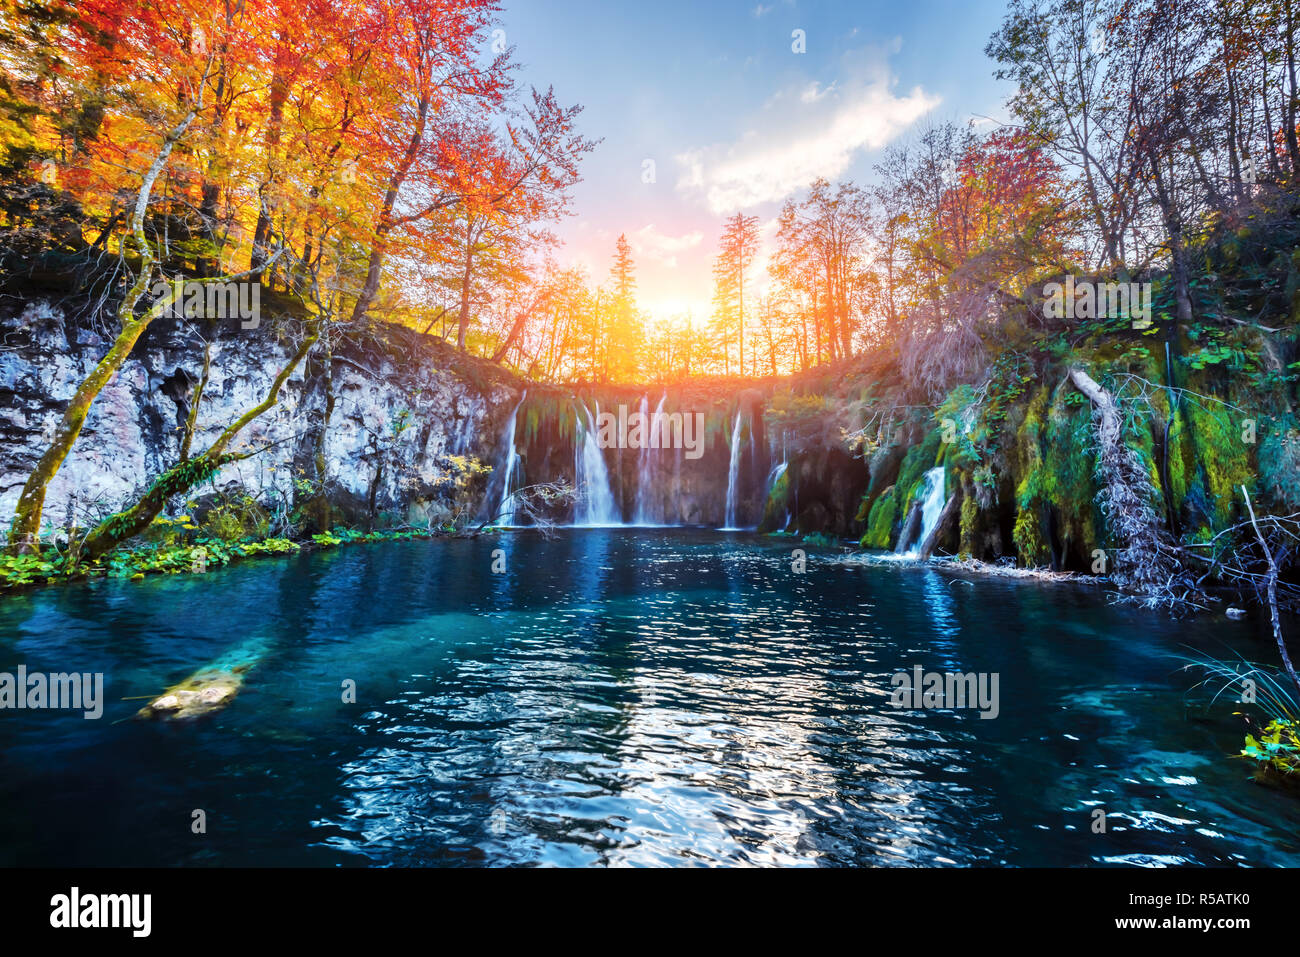 Incredibile cascata con pura acqua blu nel Parco Nazionale dei laghi di Plitvice. Orange autunno foresta sul background. Il parco nazionale di Plitvice, Croazia. Fotografia di paesaggi Foto Stock